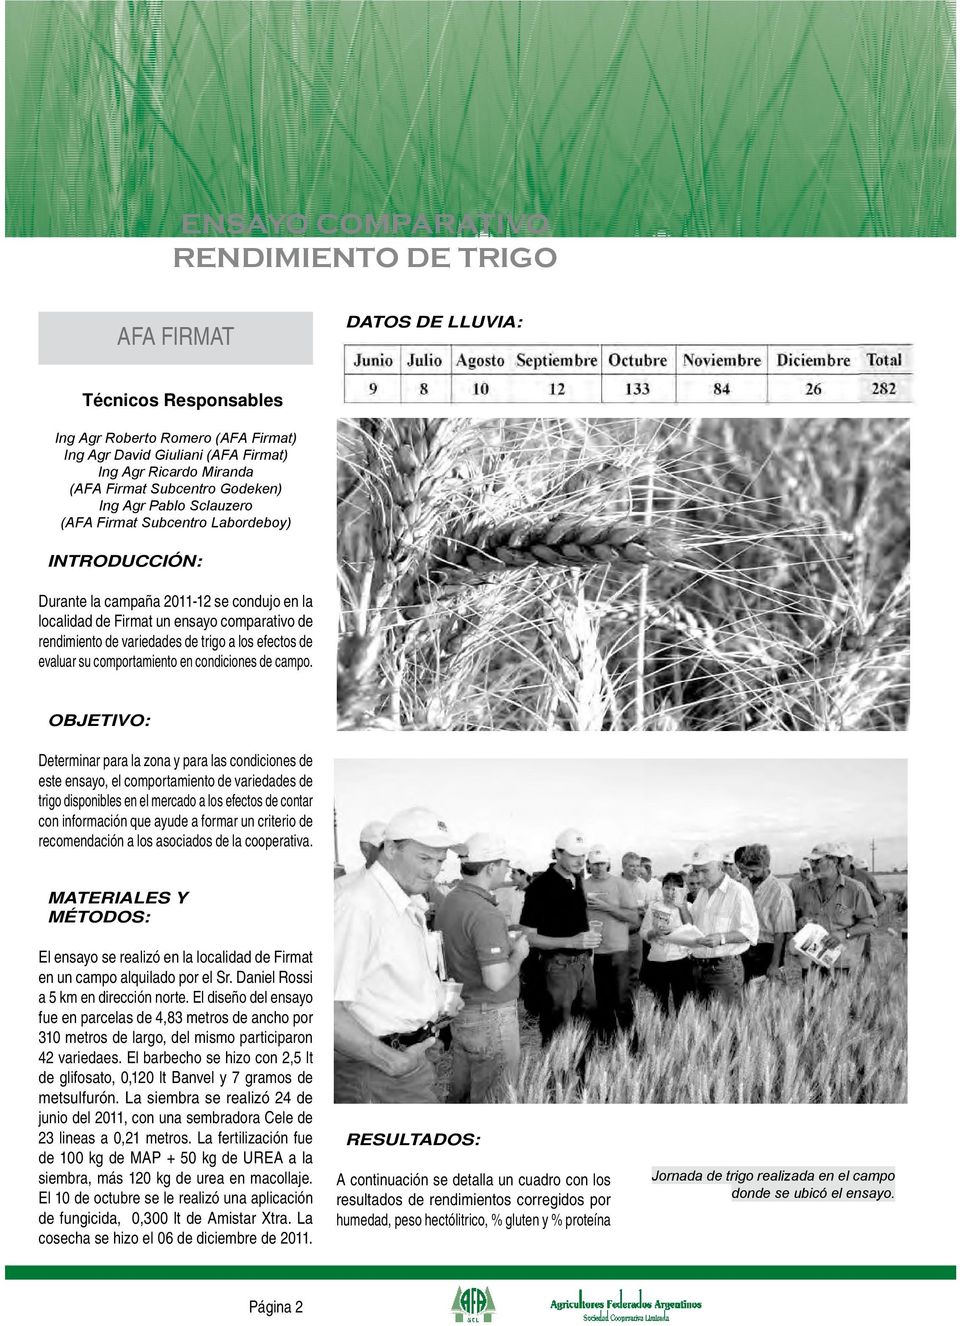 variedades de trigo a los efectos de evaluar su comportamiento en condiciones de campo.